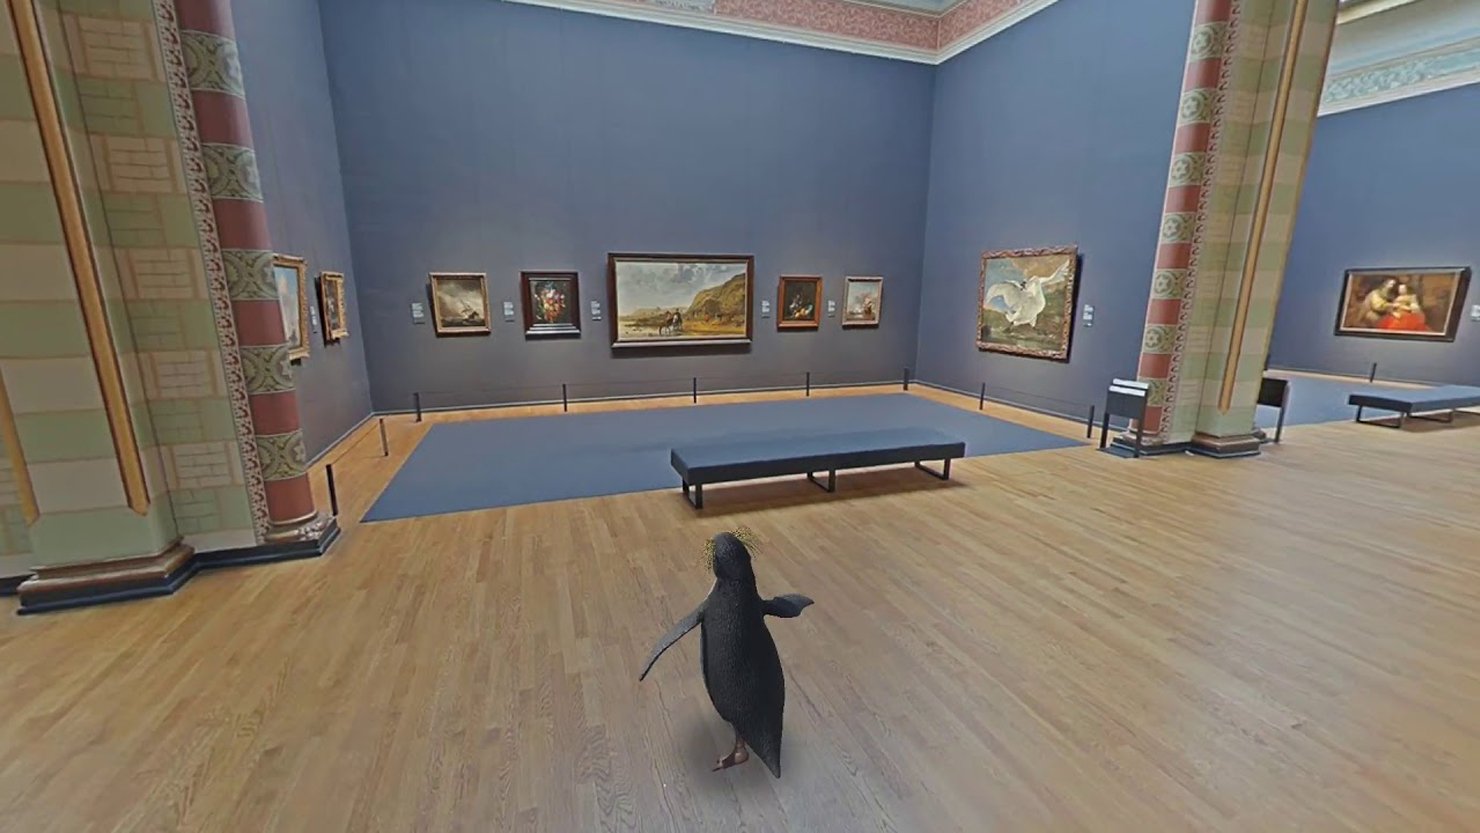 Virtual penguin tour of the Rijksmuseum